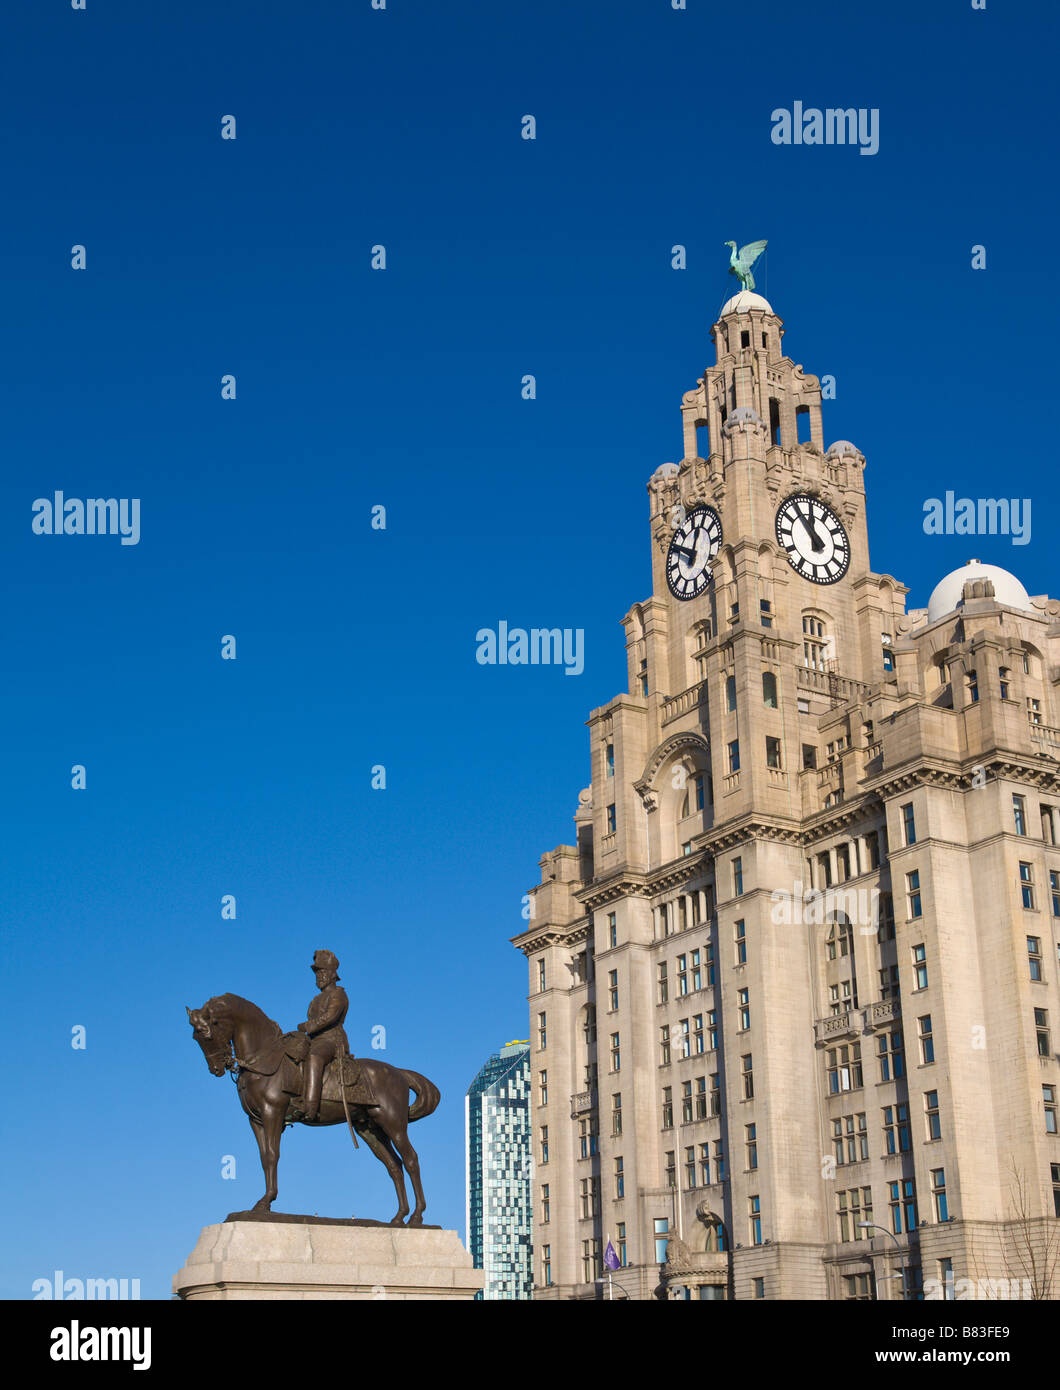 "Liver Building' y la estatua del rey Edward 7th, Liverpool, Merseyside, Inglaterra Foto de stock